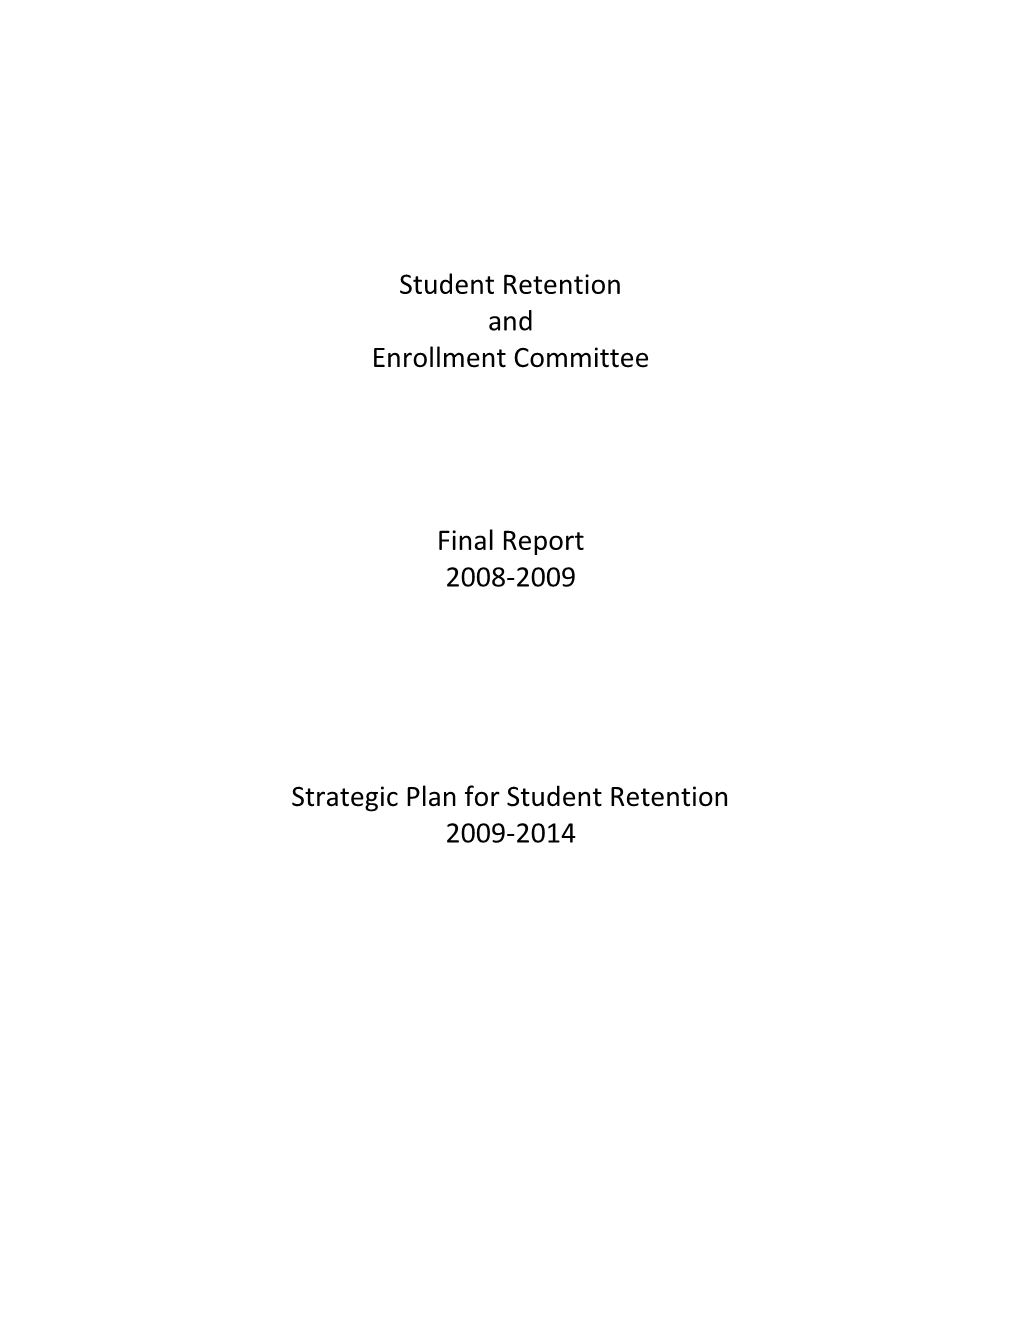 Strategic Plan for Student Retention